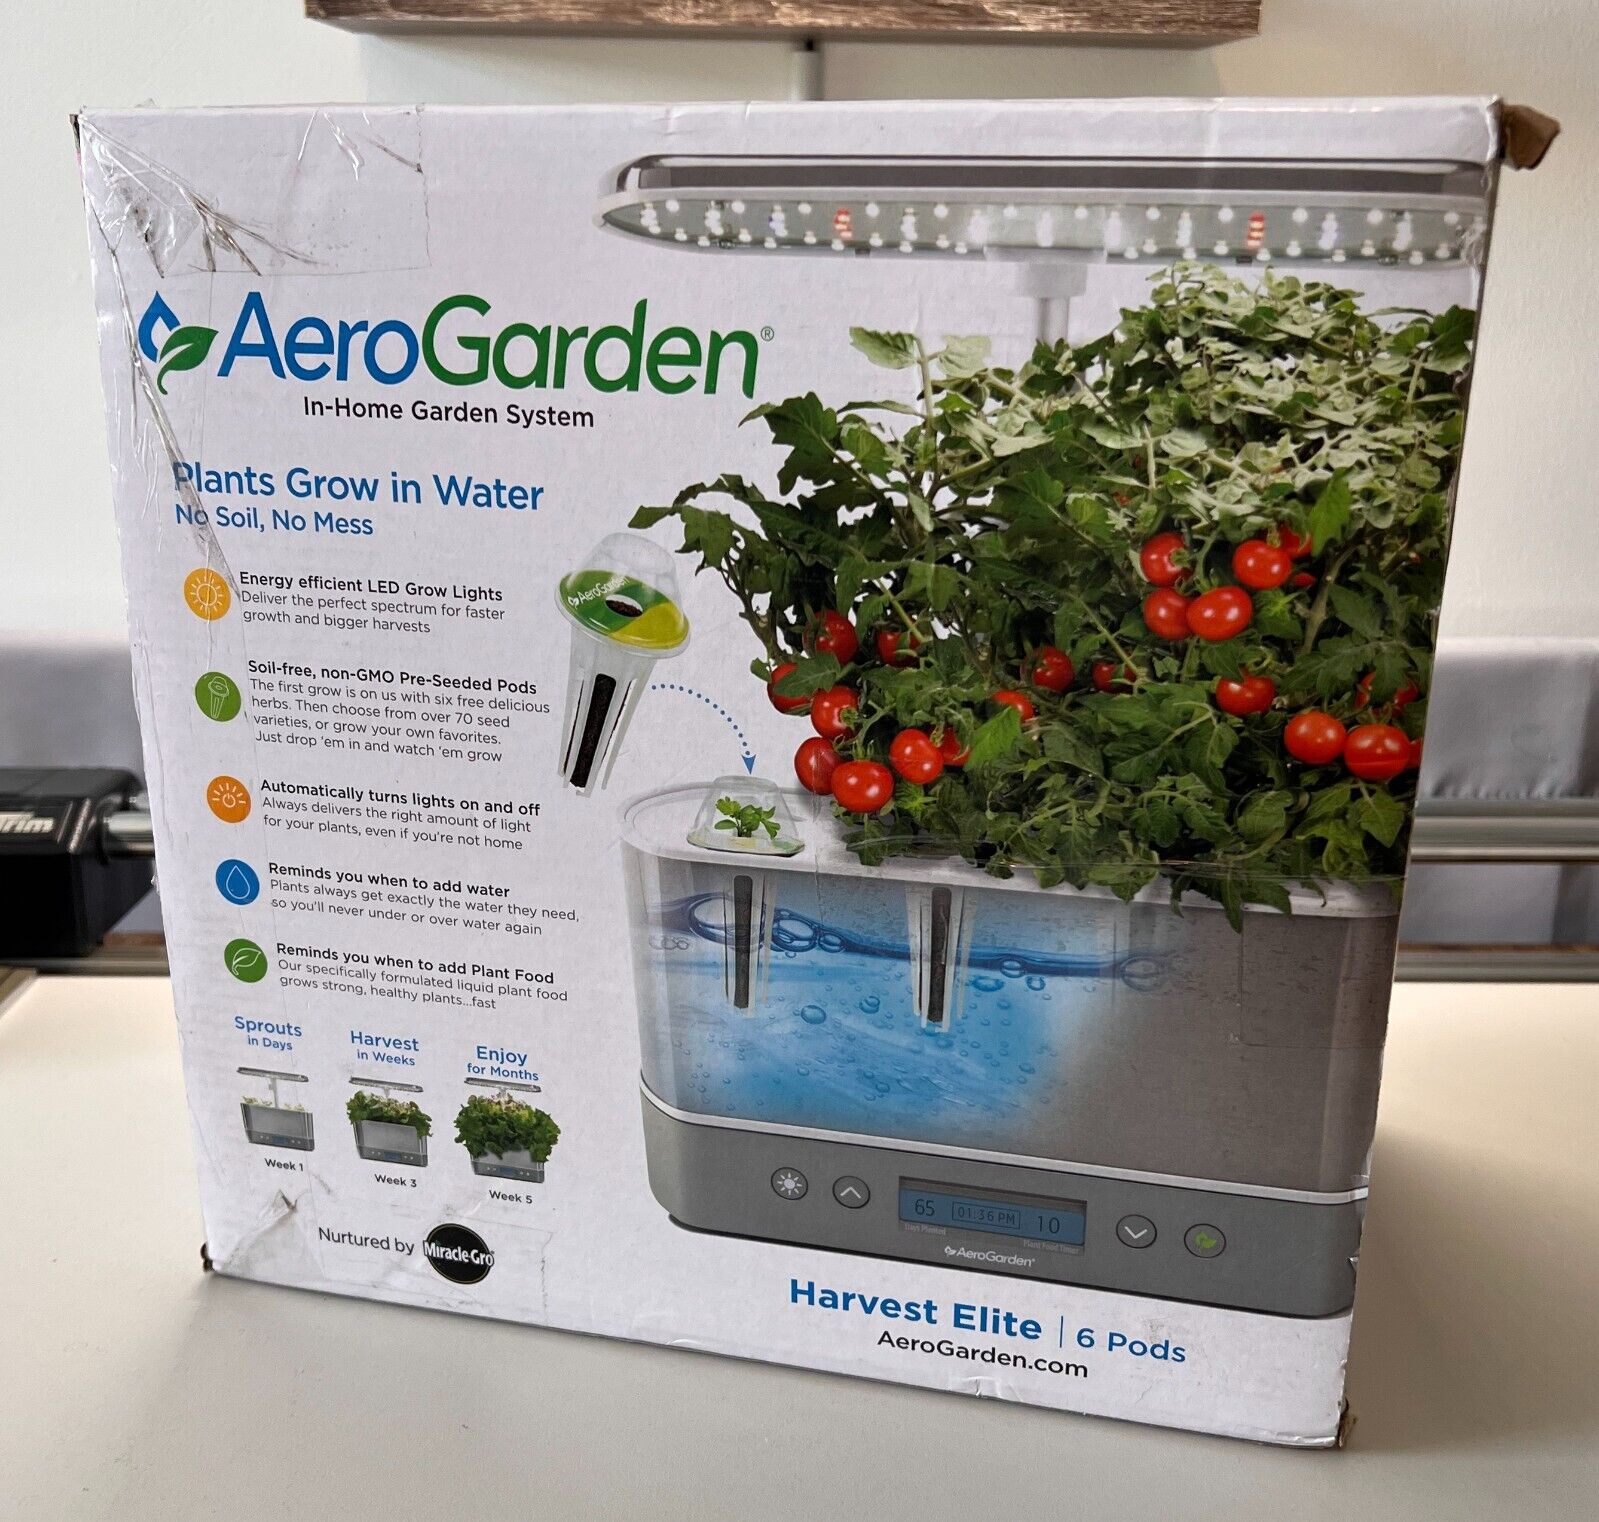 AeroGarden Harvest Elite Stainless Steel 6 Pod In-Home Garden System